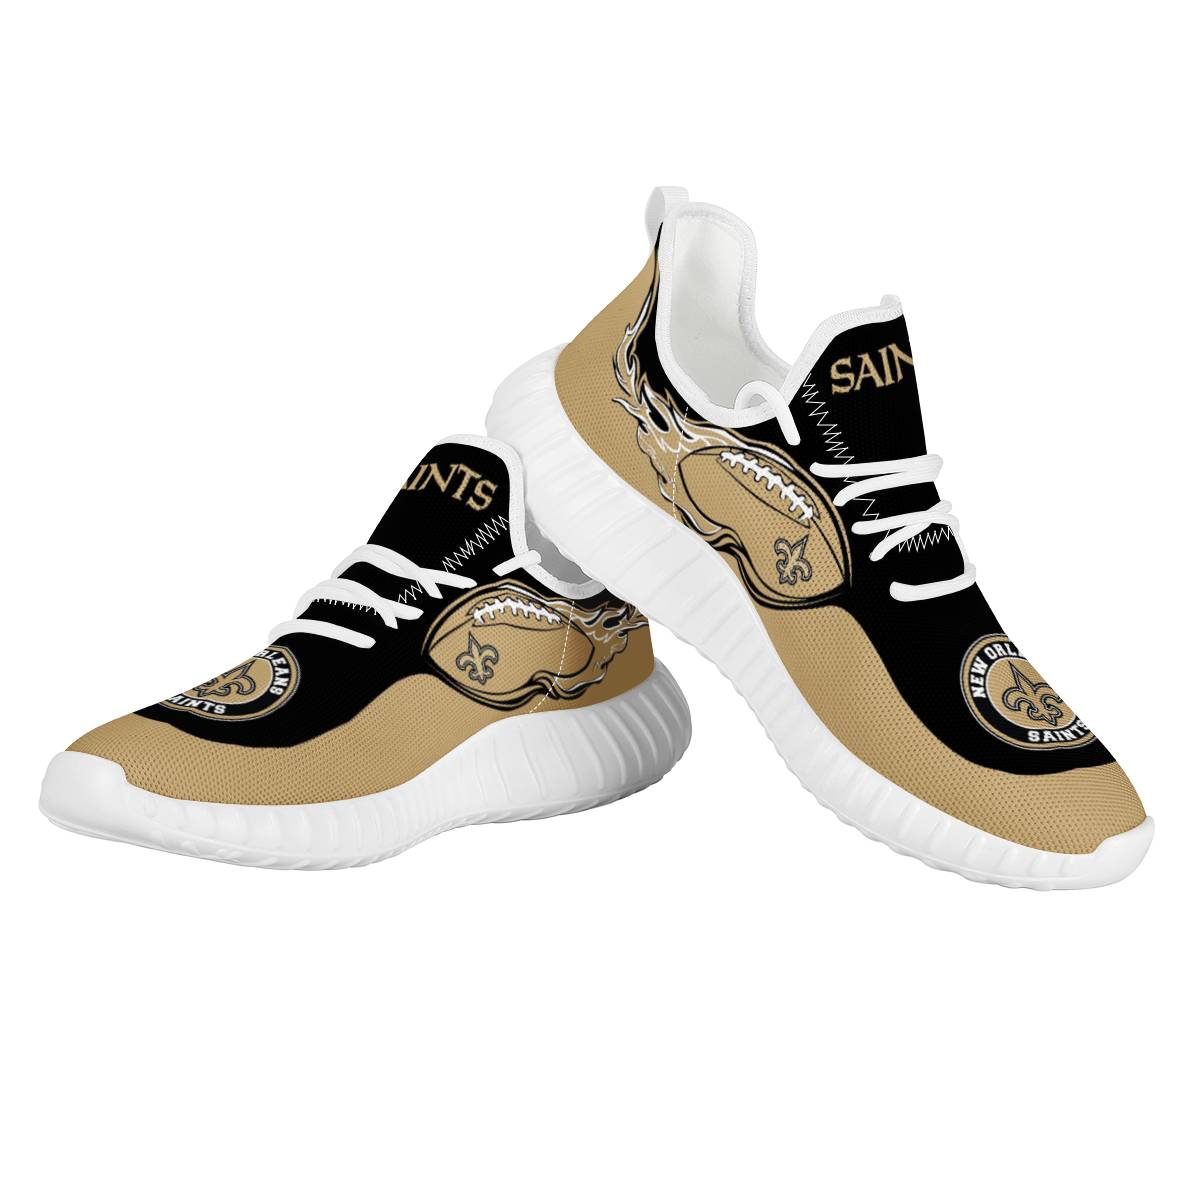 Women's New Orleans Saints Mesh Knit Sneakers/Shoes 009